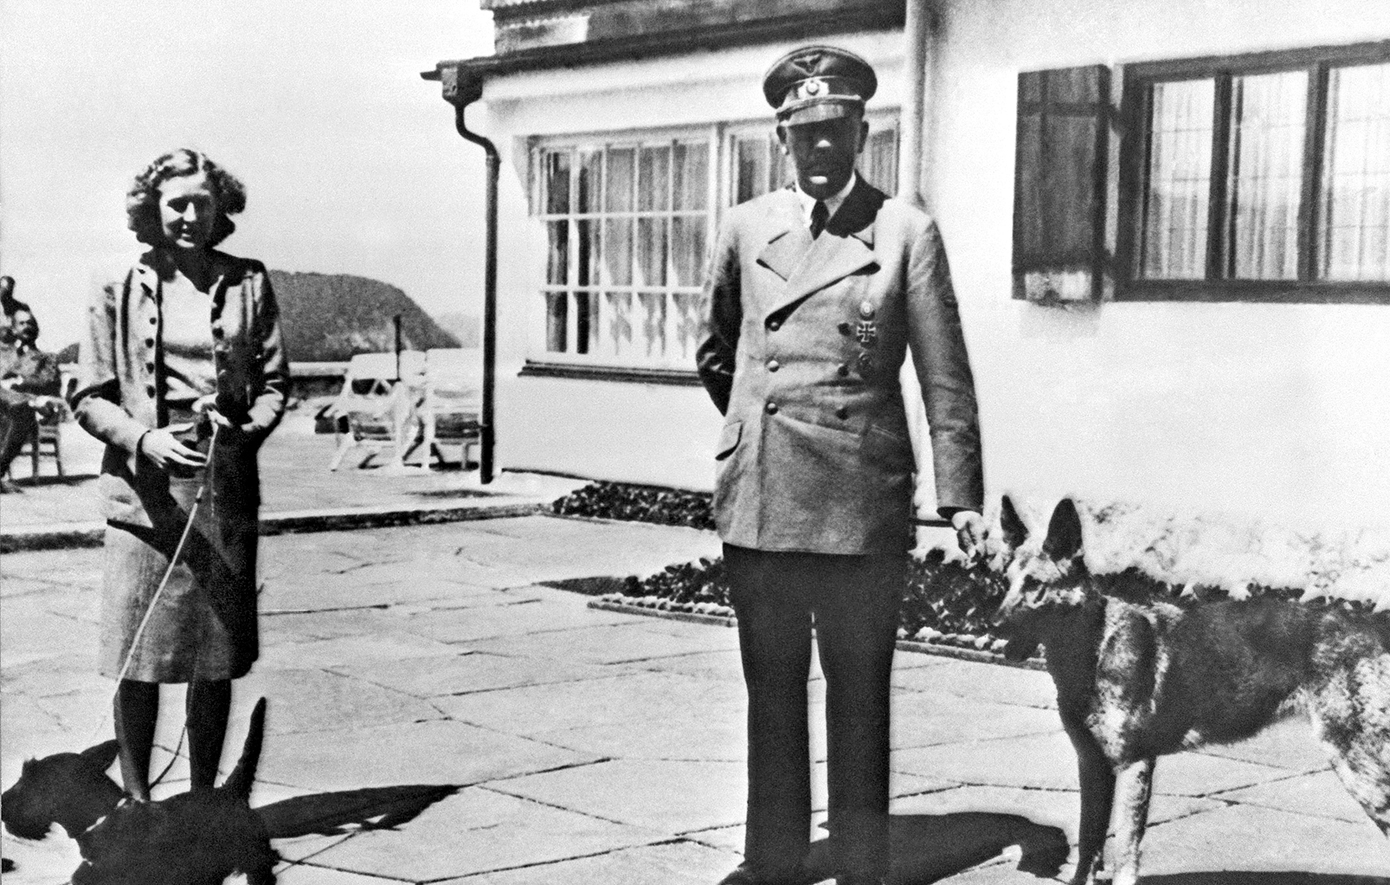 Σαν σήμερα 30 Απριλίου: Ο Χίτλερ αυτοκτονεί μαζί με την Εύα Μπράουν στο υπόγειο καταφύγιό του